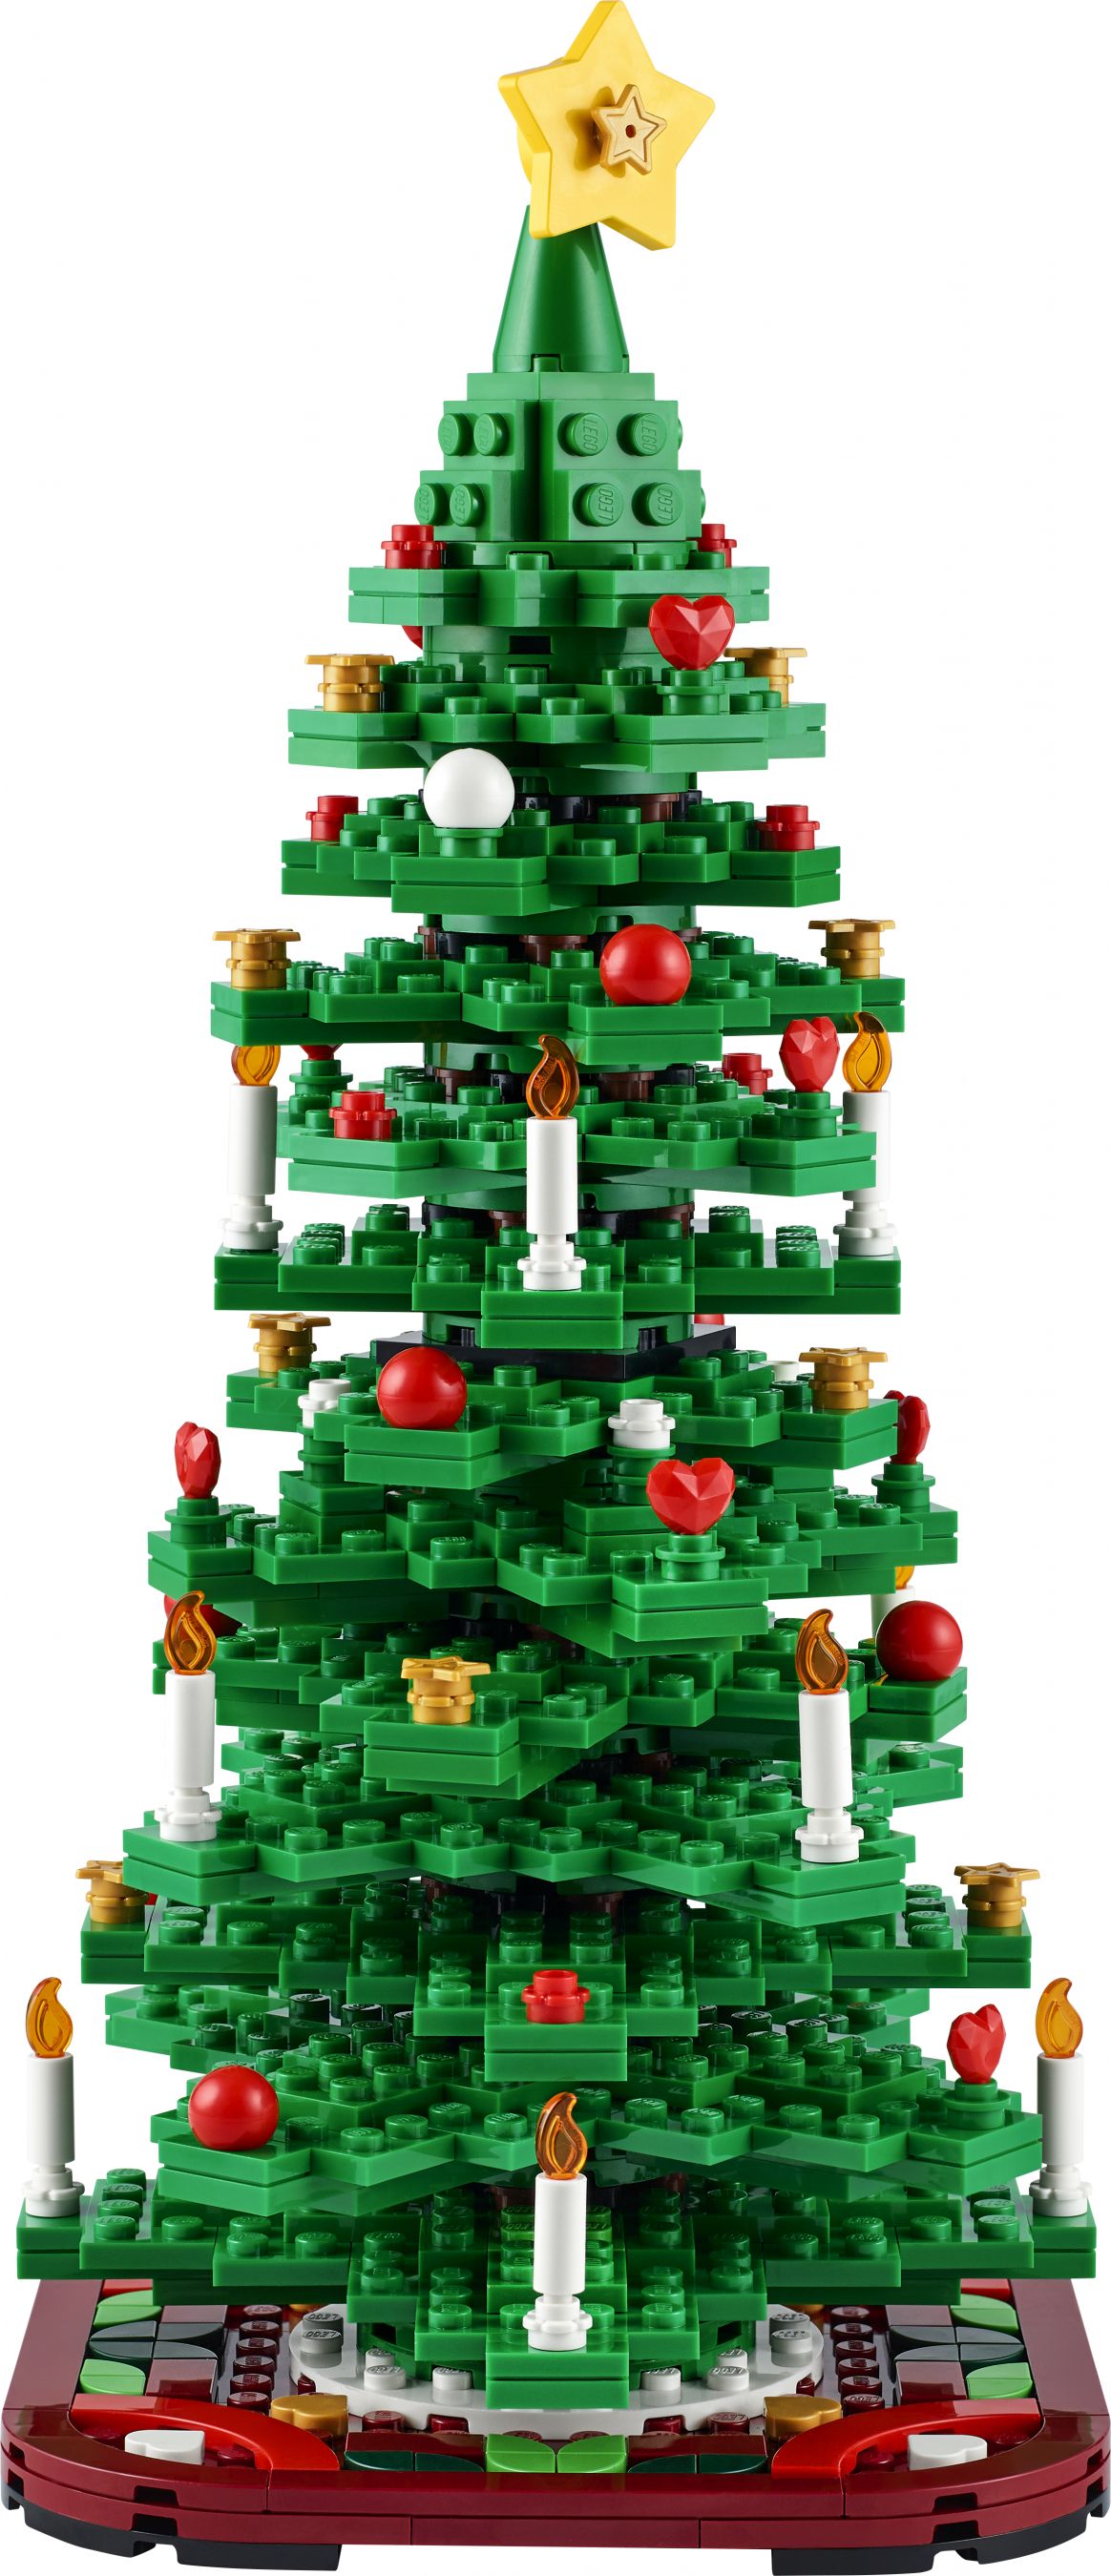 LEGO Promotional 40573 Christmas Tree